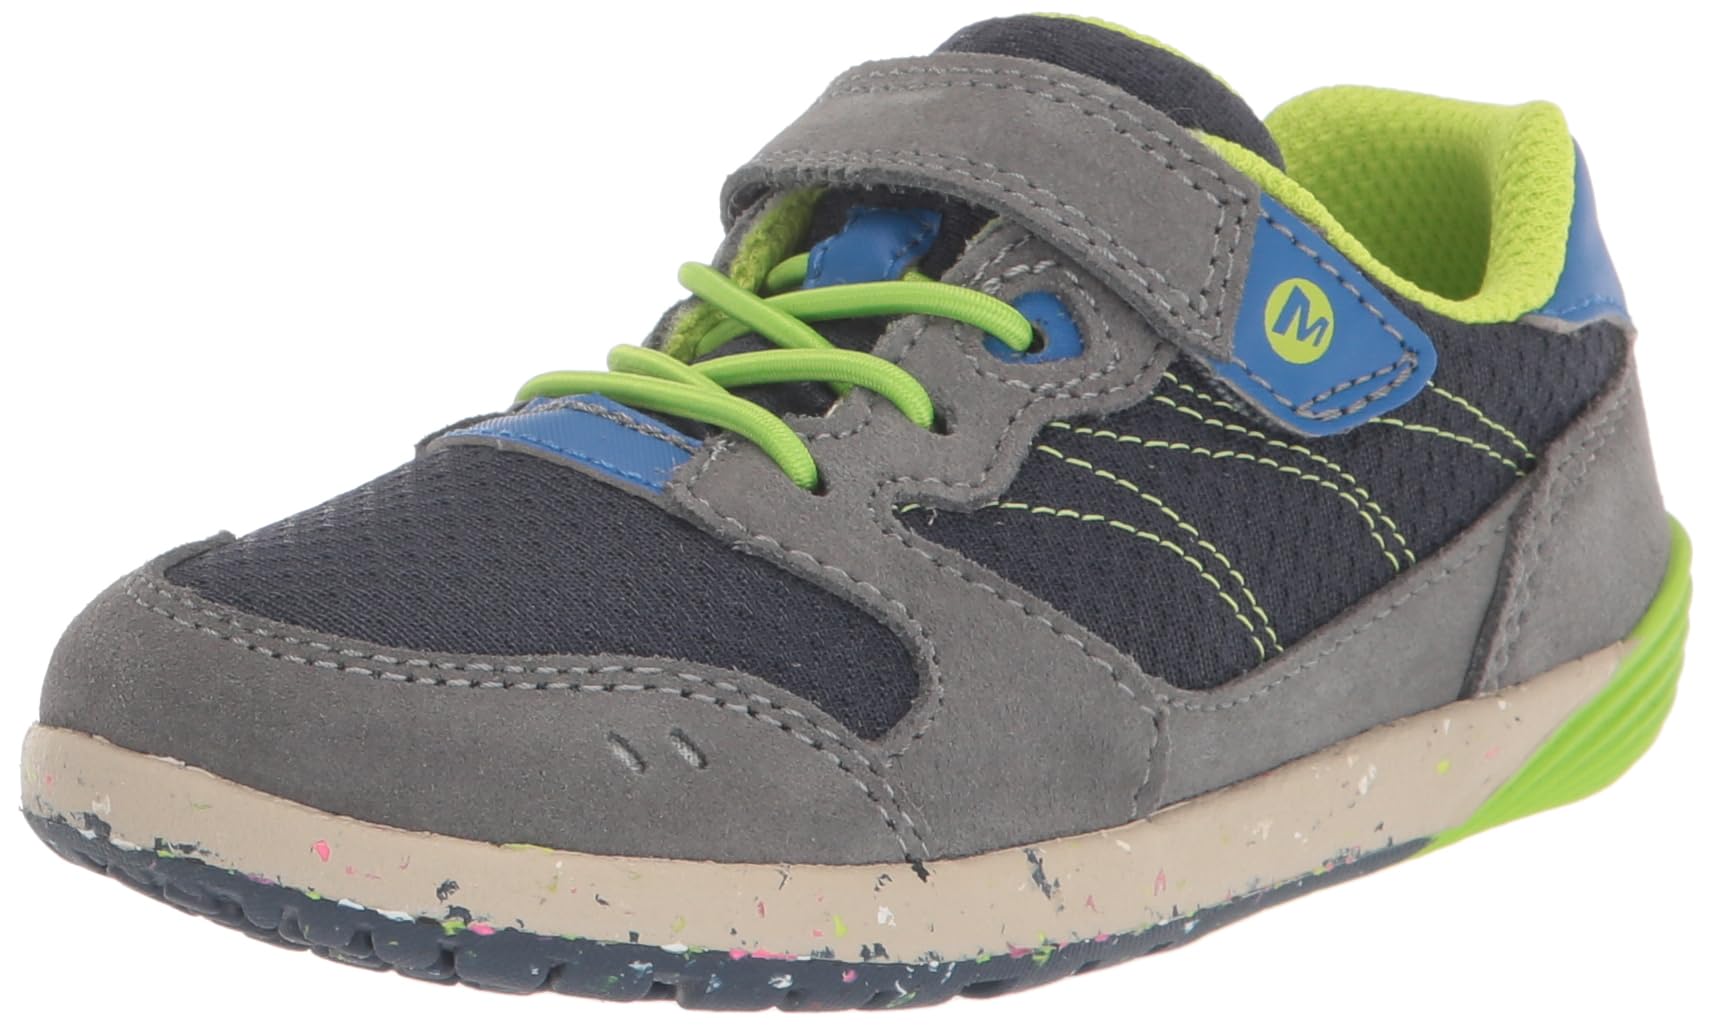 Merrell Unisex-Child Bare Steps A83 Sneaker